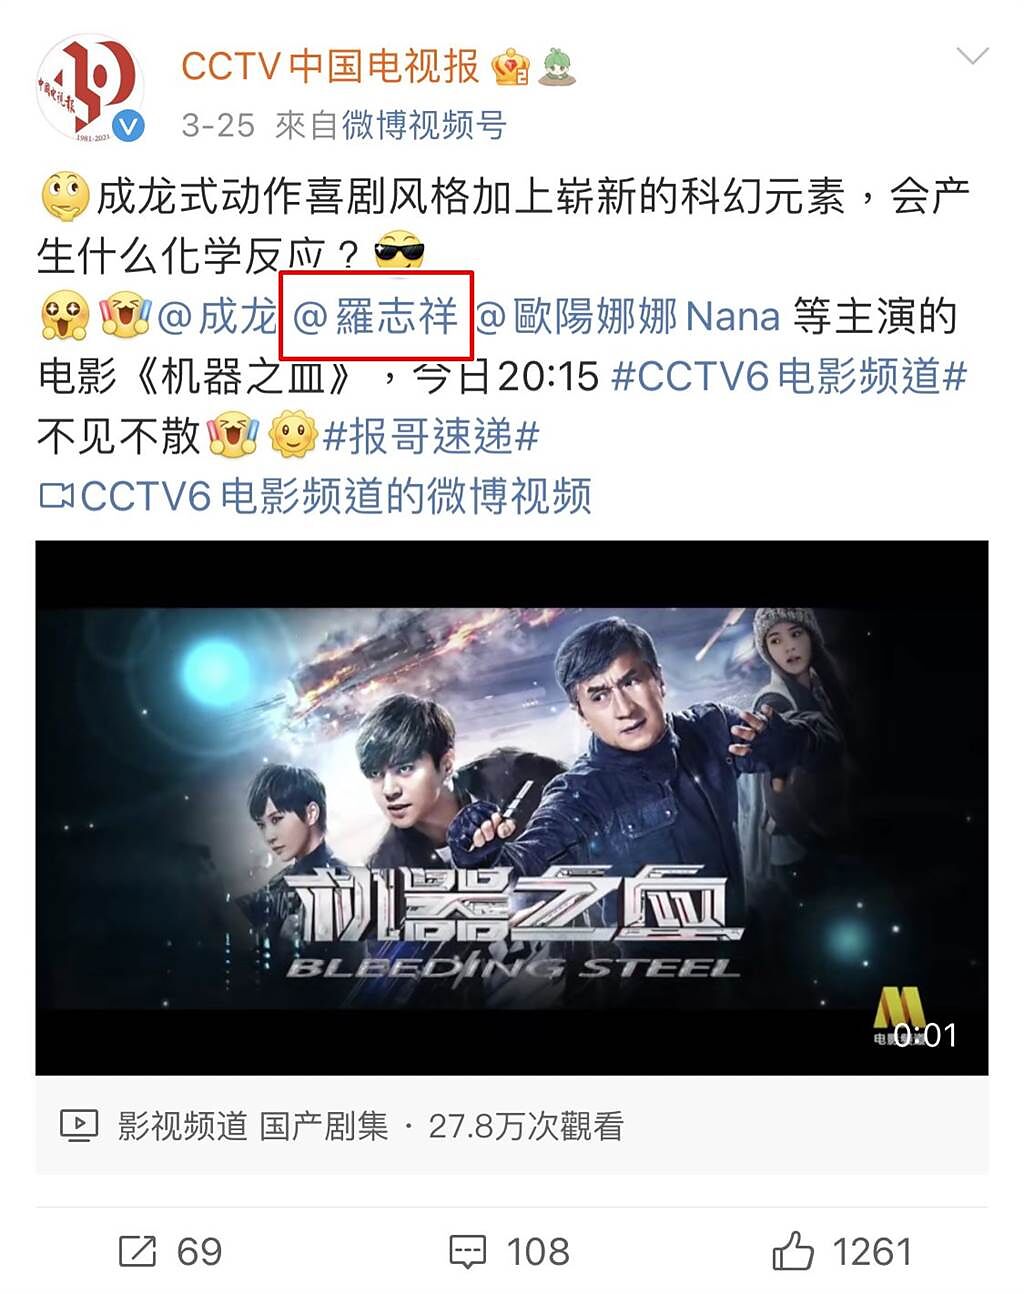 羅志祥4年前的電影，被央視相關微博貼出宣傳。(翻攝自CCTV中國電視報微博)